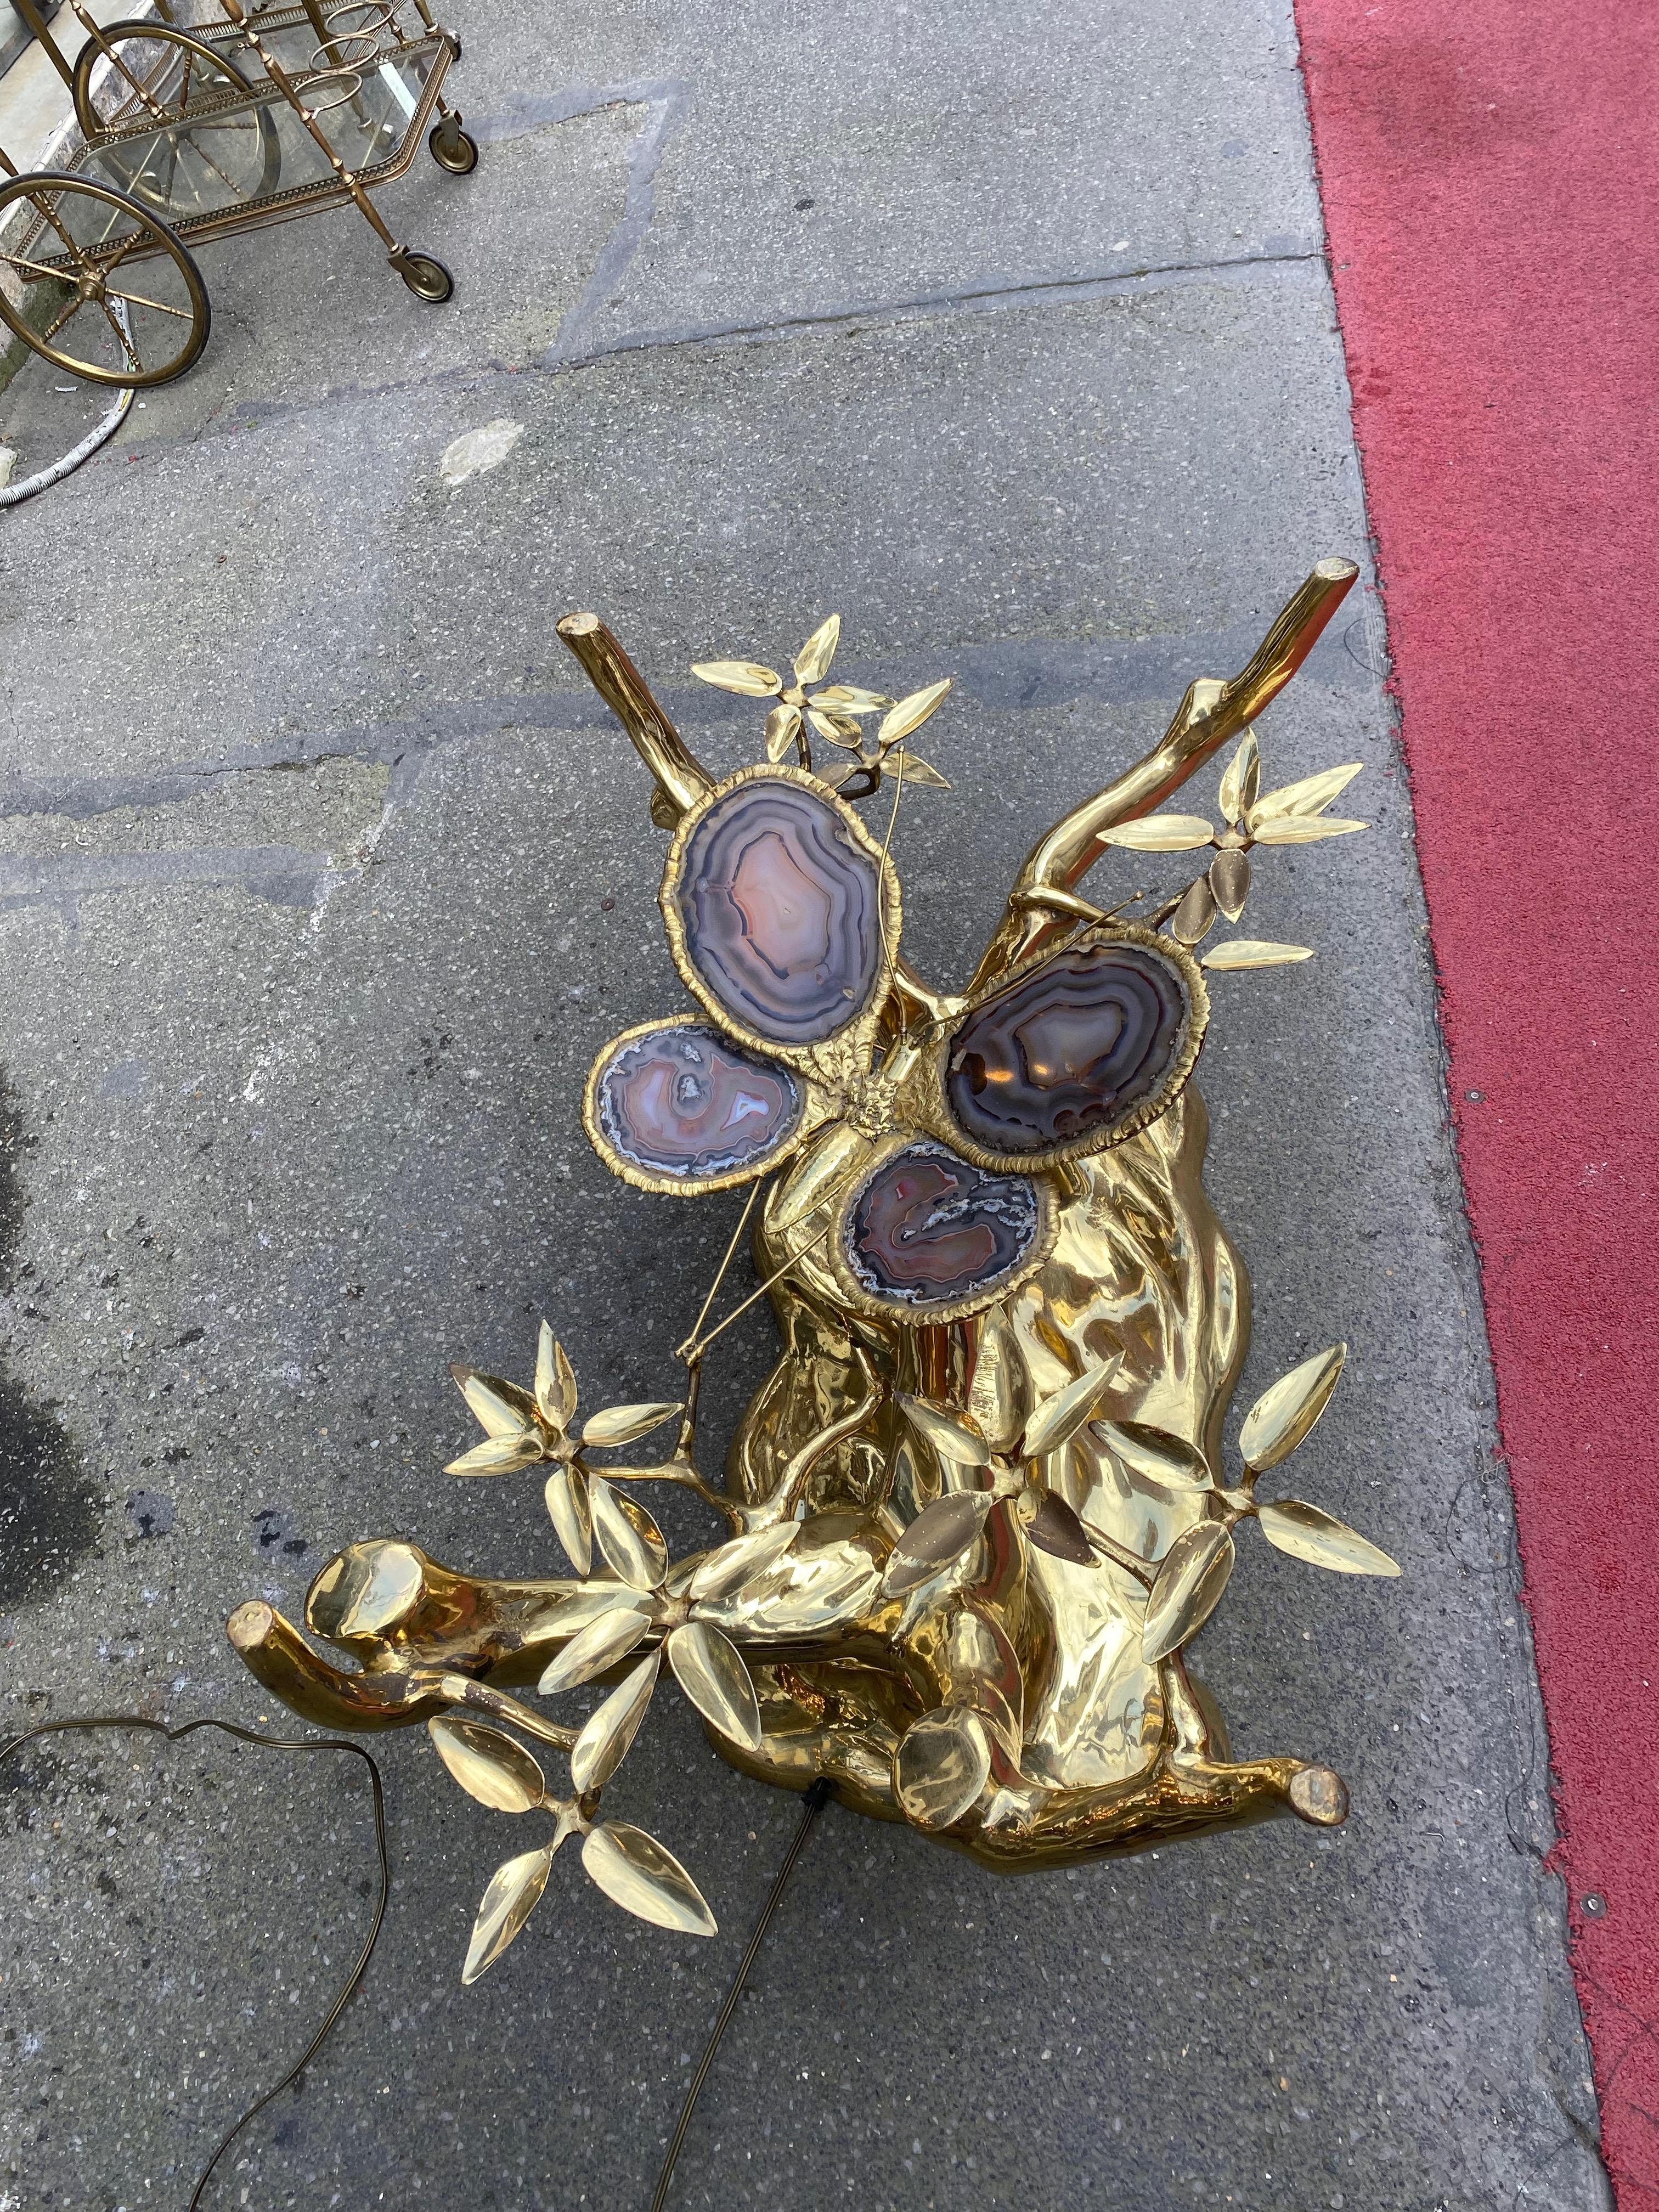 1Table basse lumineuse en bronze doré, 4 ampoules, représentant un bonsaï sur une dune de sable avec un papillon en bronze et des ailes en agate bleue,
circa 1970, bonne condition
Attribué à Isabelle ou Richard Faure ou Duval Brasseur
Dimensions